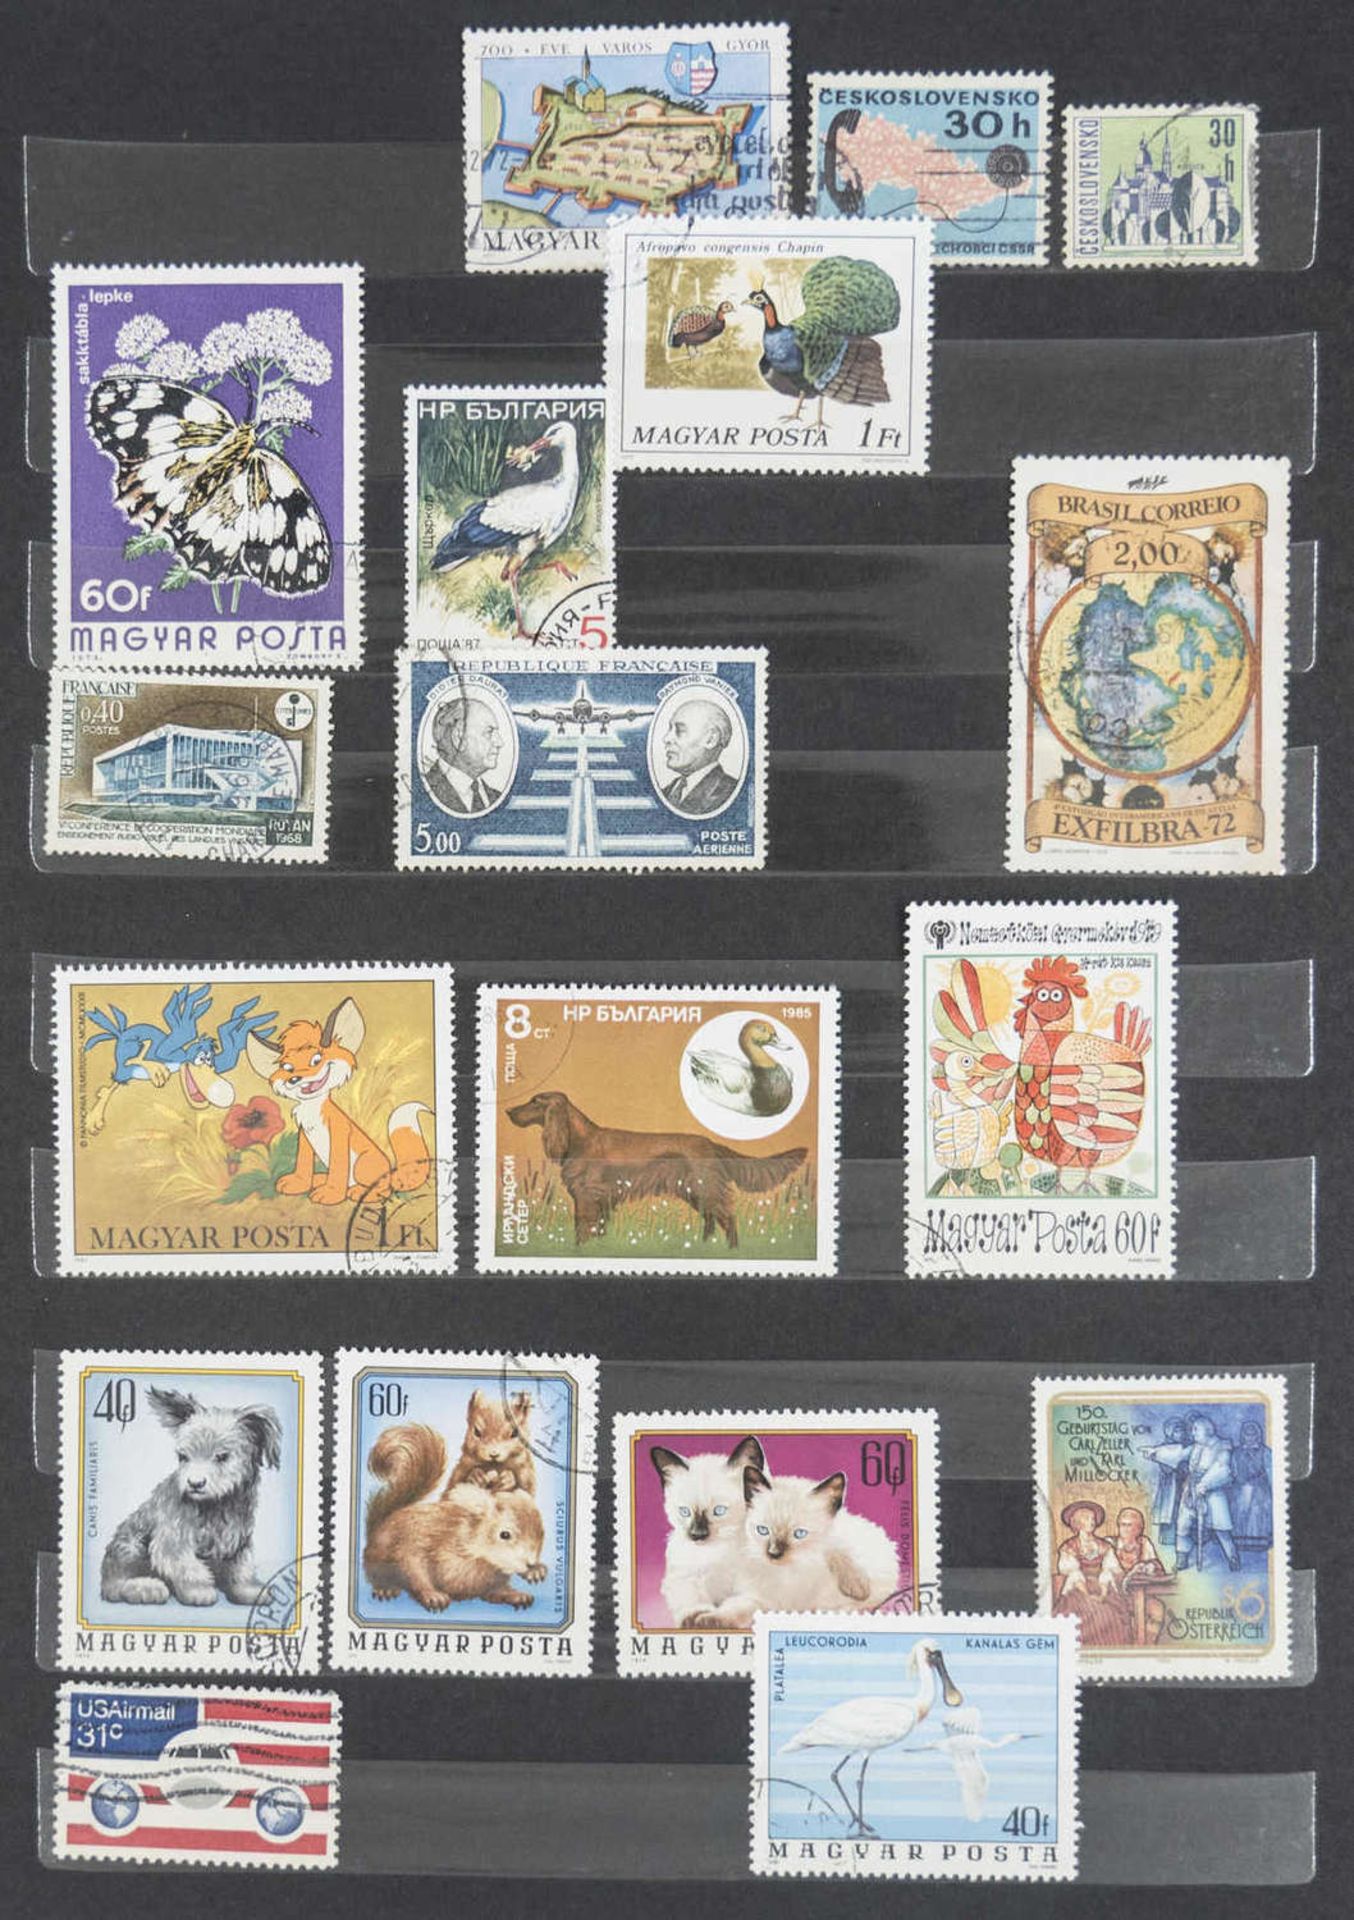 Steck - Album "alrabra" mit Briefmarken - Sammlung aus aller Welt. Überwiegend gestempelt. Eine - Bild 9 aus 13